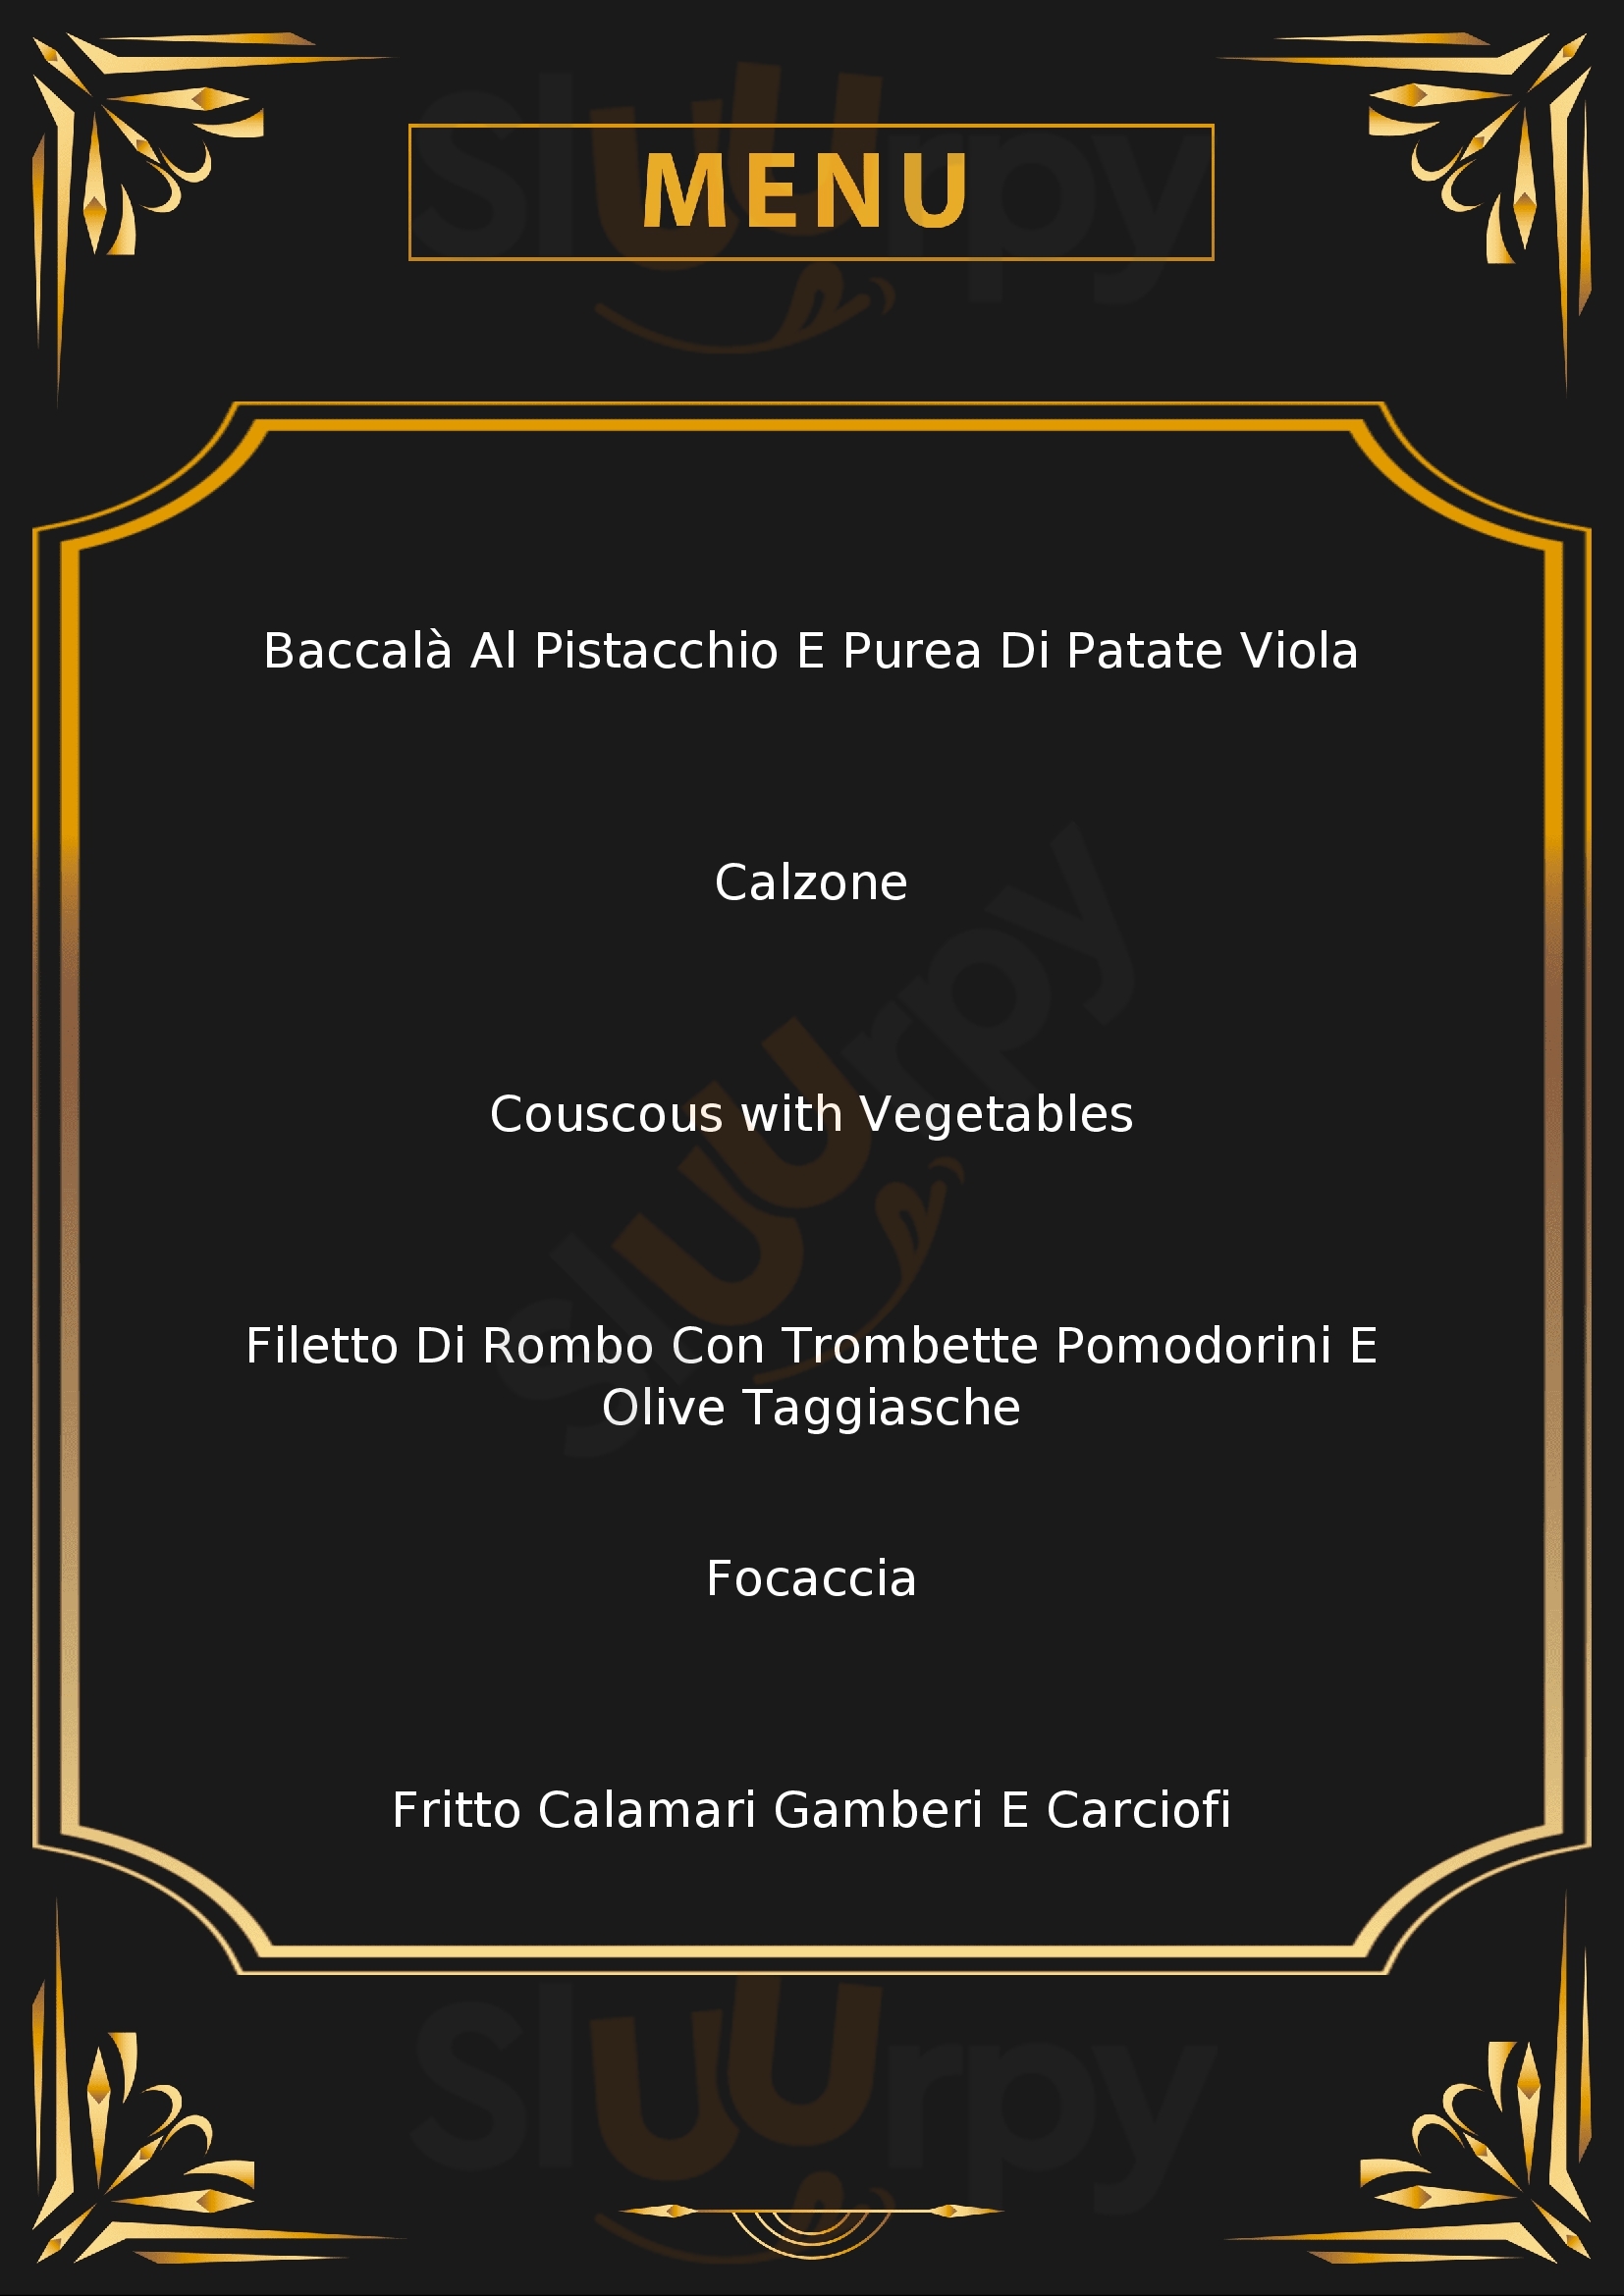 Quintessenza Restaurant Sanremo menù 1 pagina